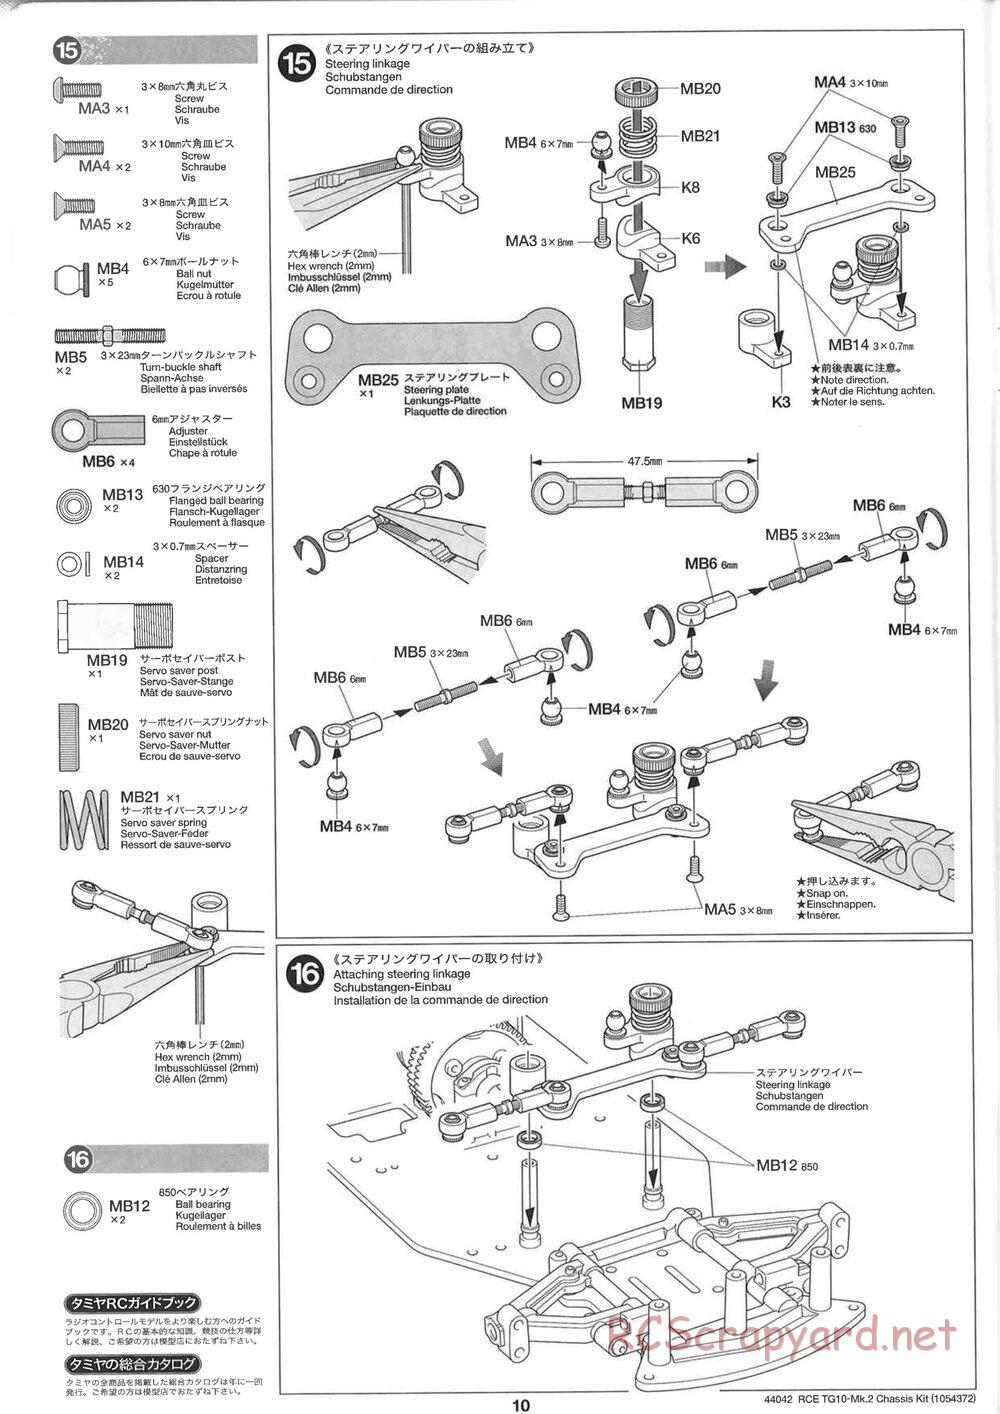 Tamiya - TG10 Mk.2 Chassis - Manual - Page 10